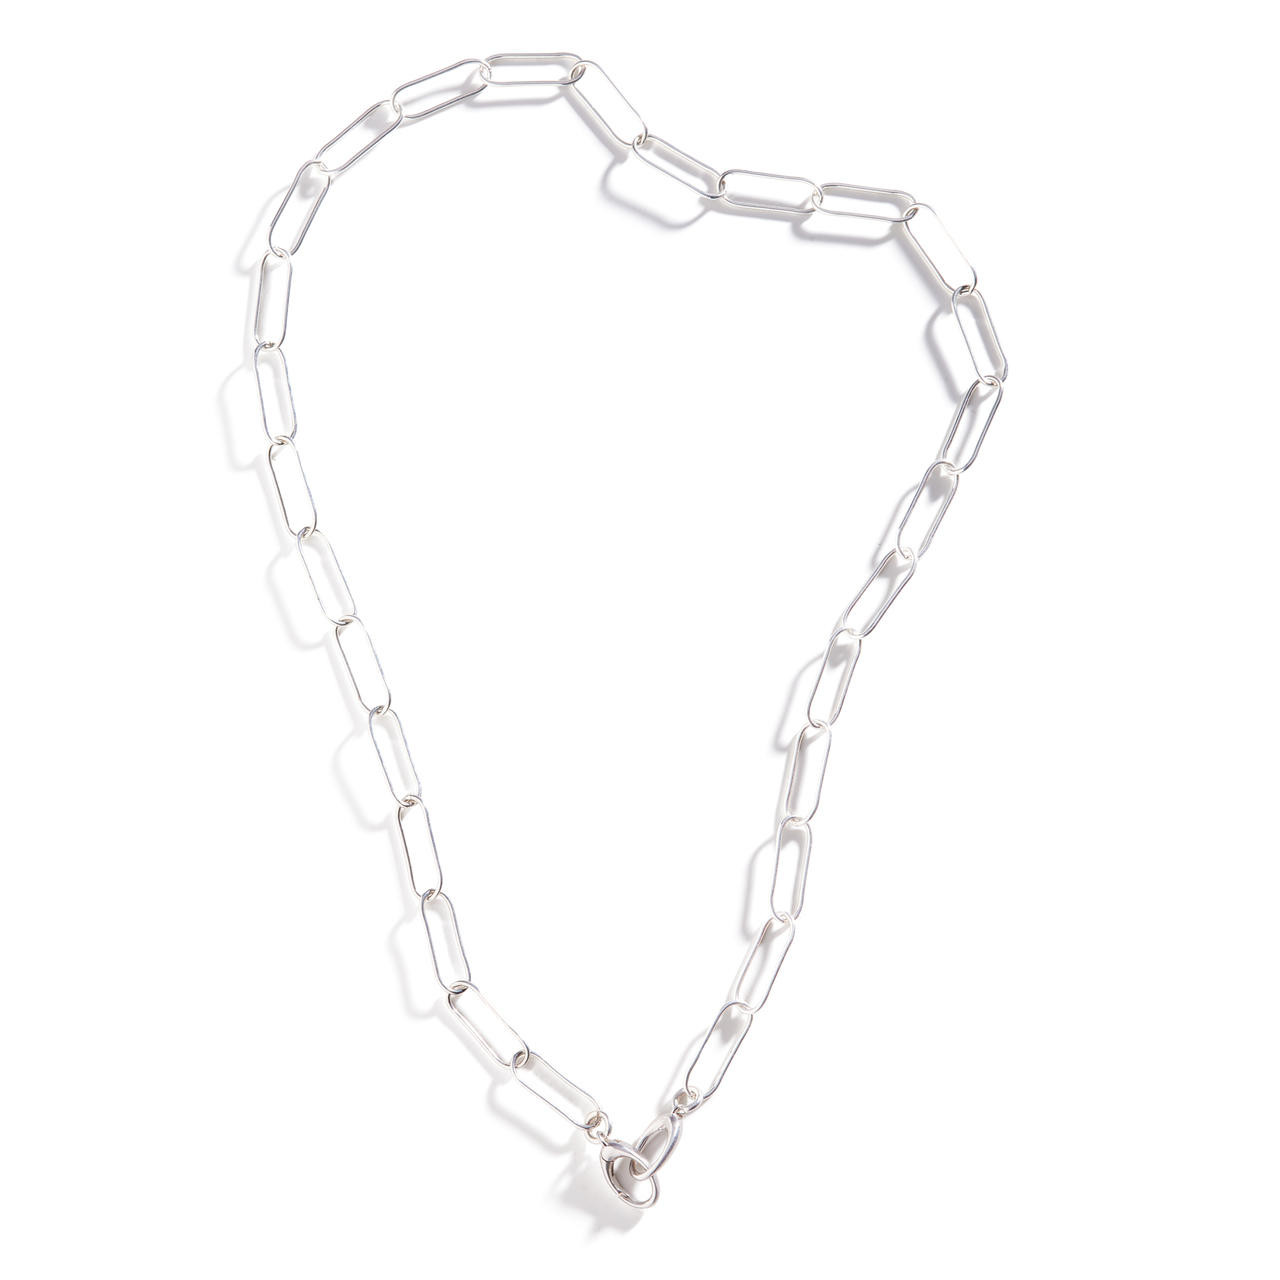 Barebone Three Layer Necklace Clasp - Silver